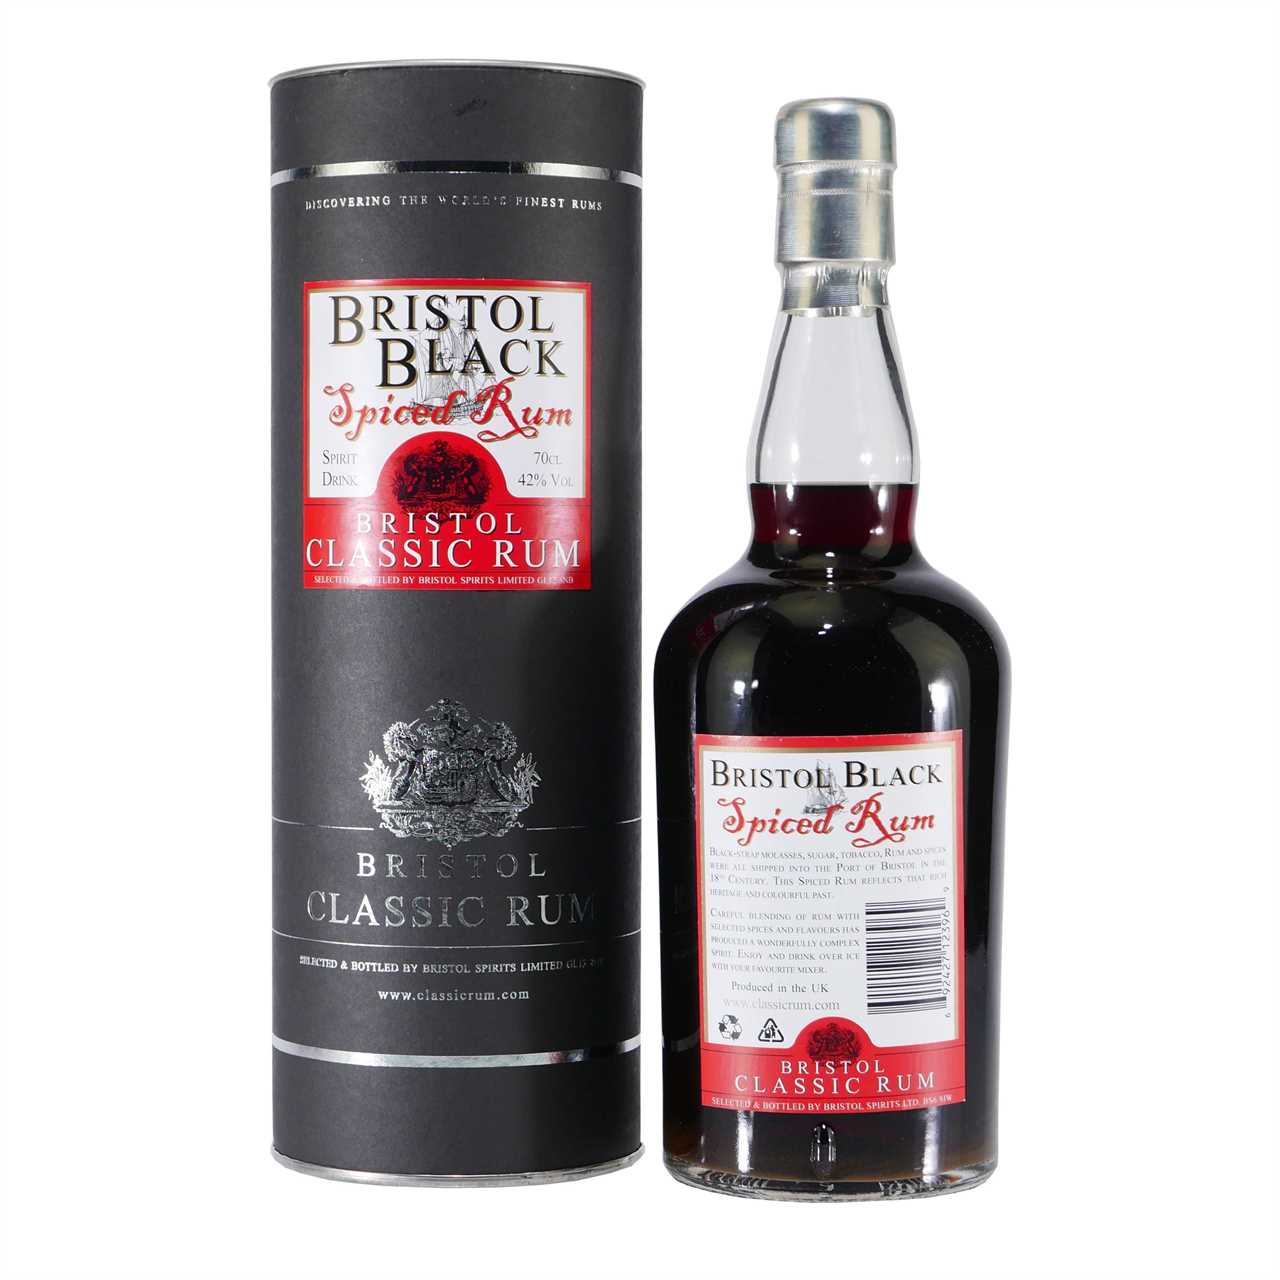 Bristol Black Spiced Rum